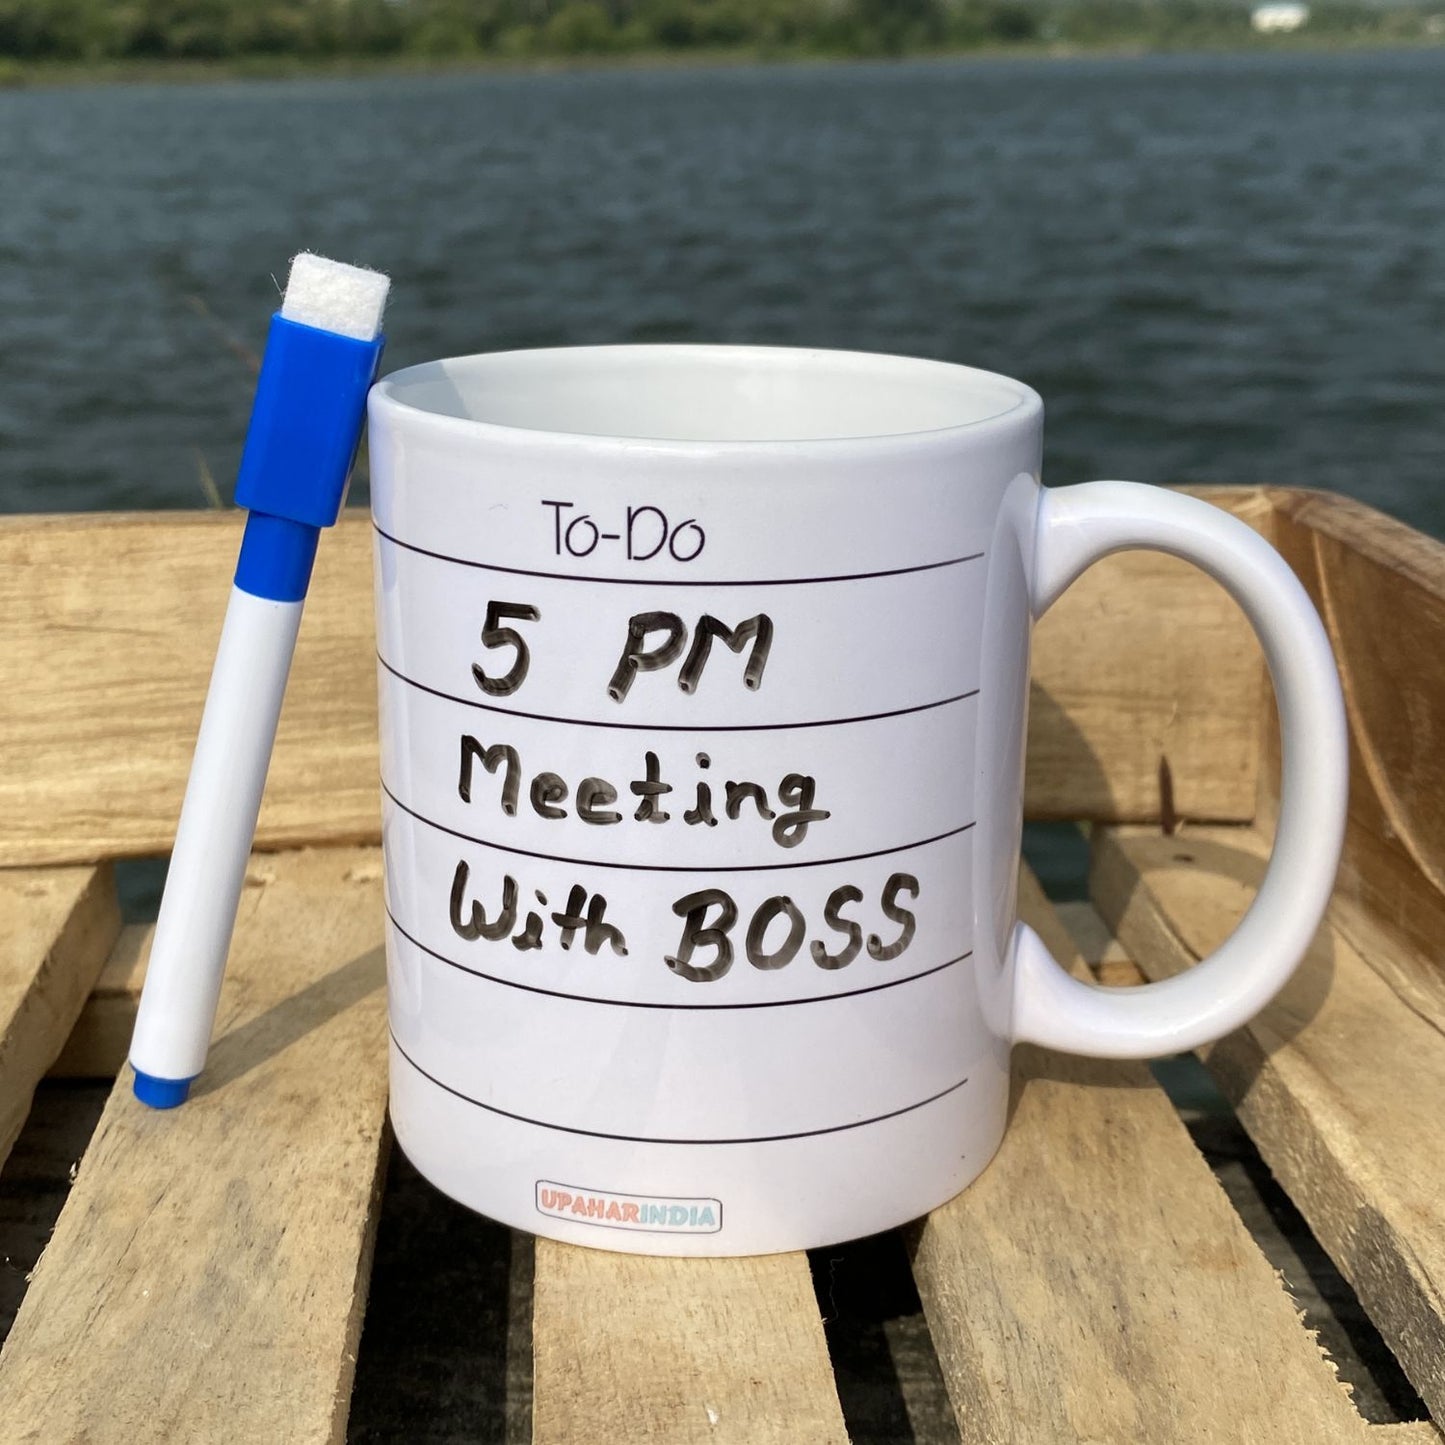 To-Do Writing Mug